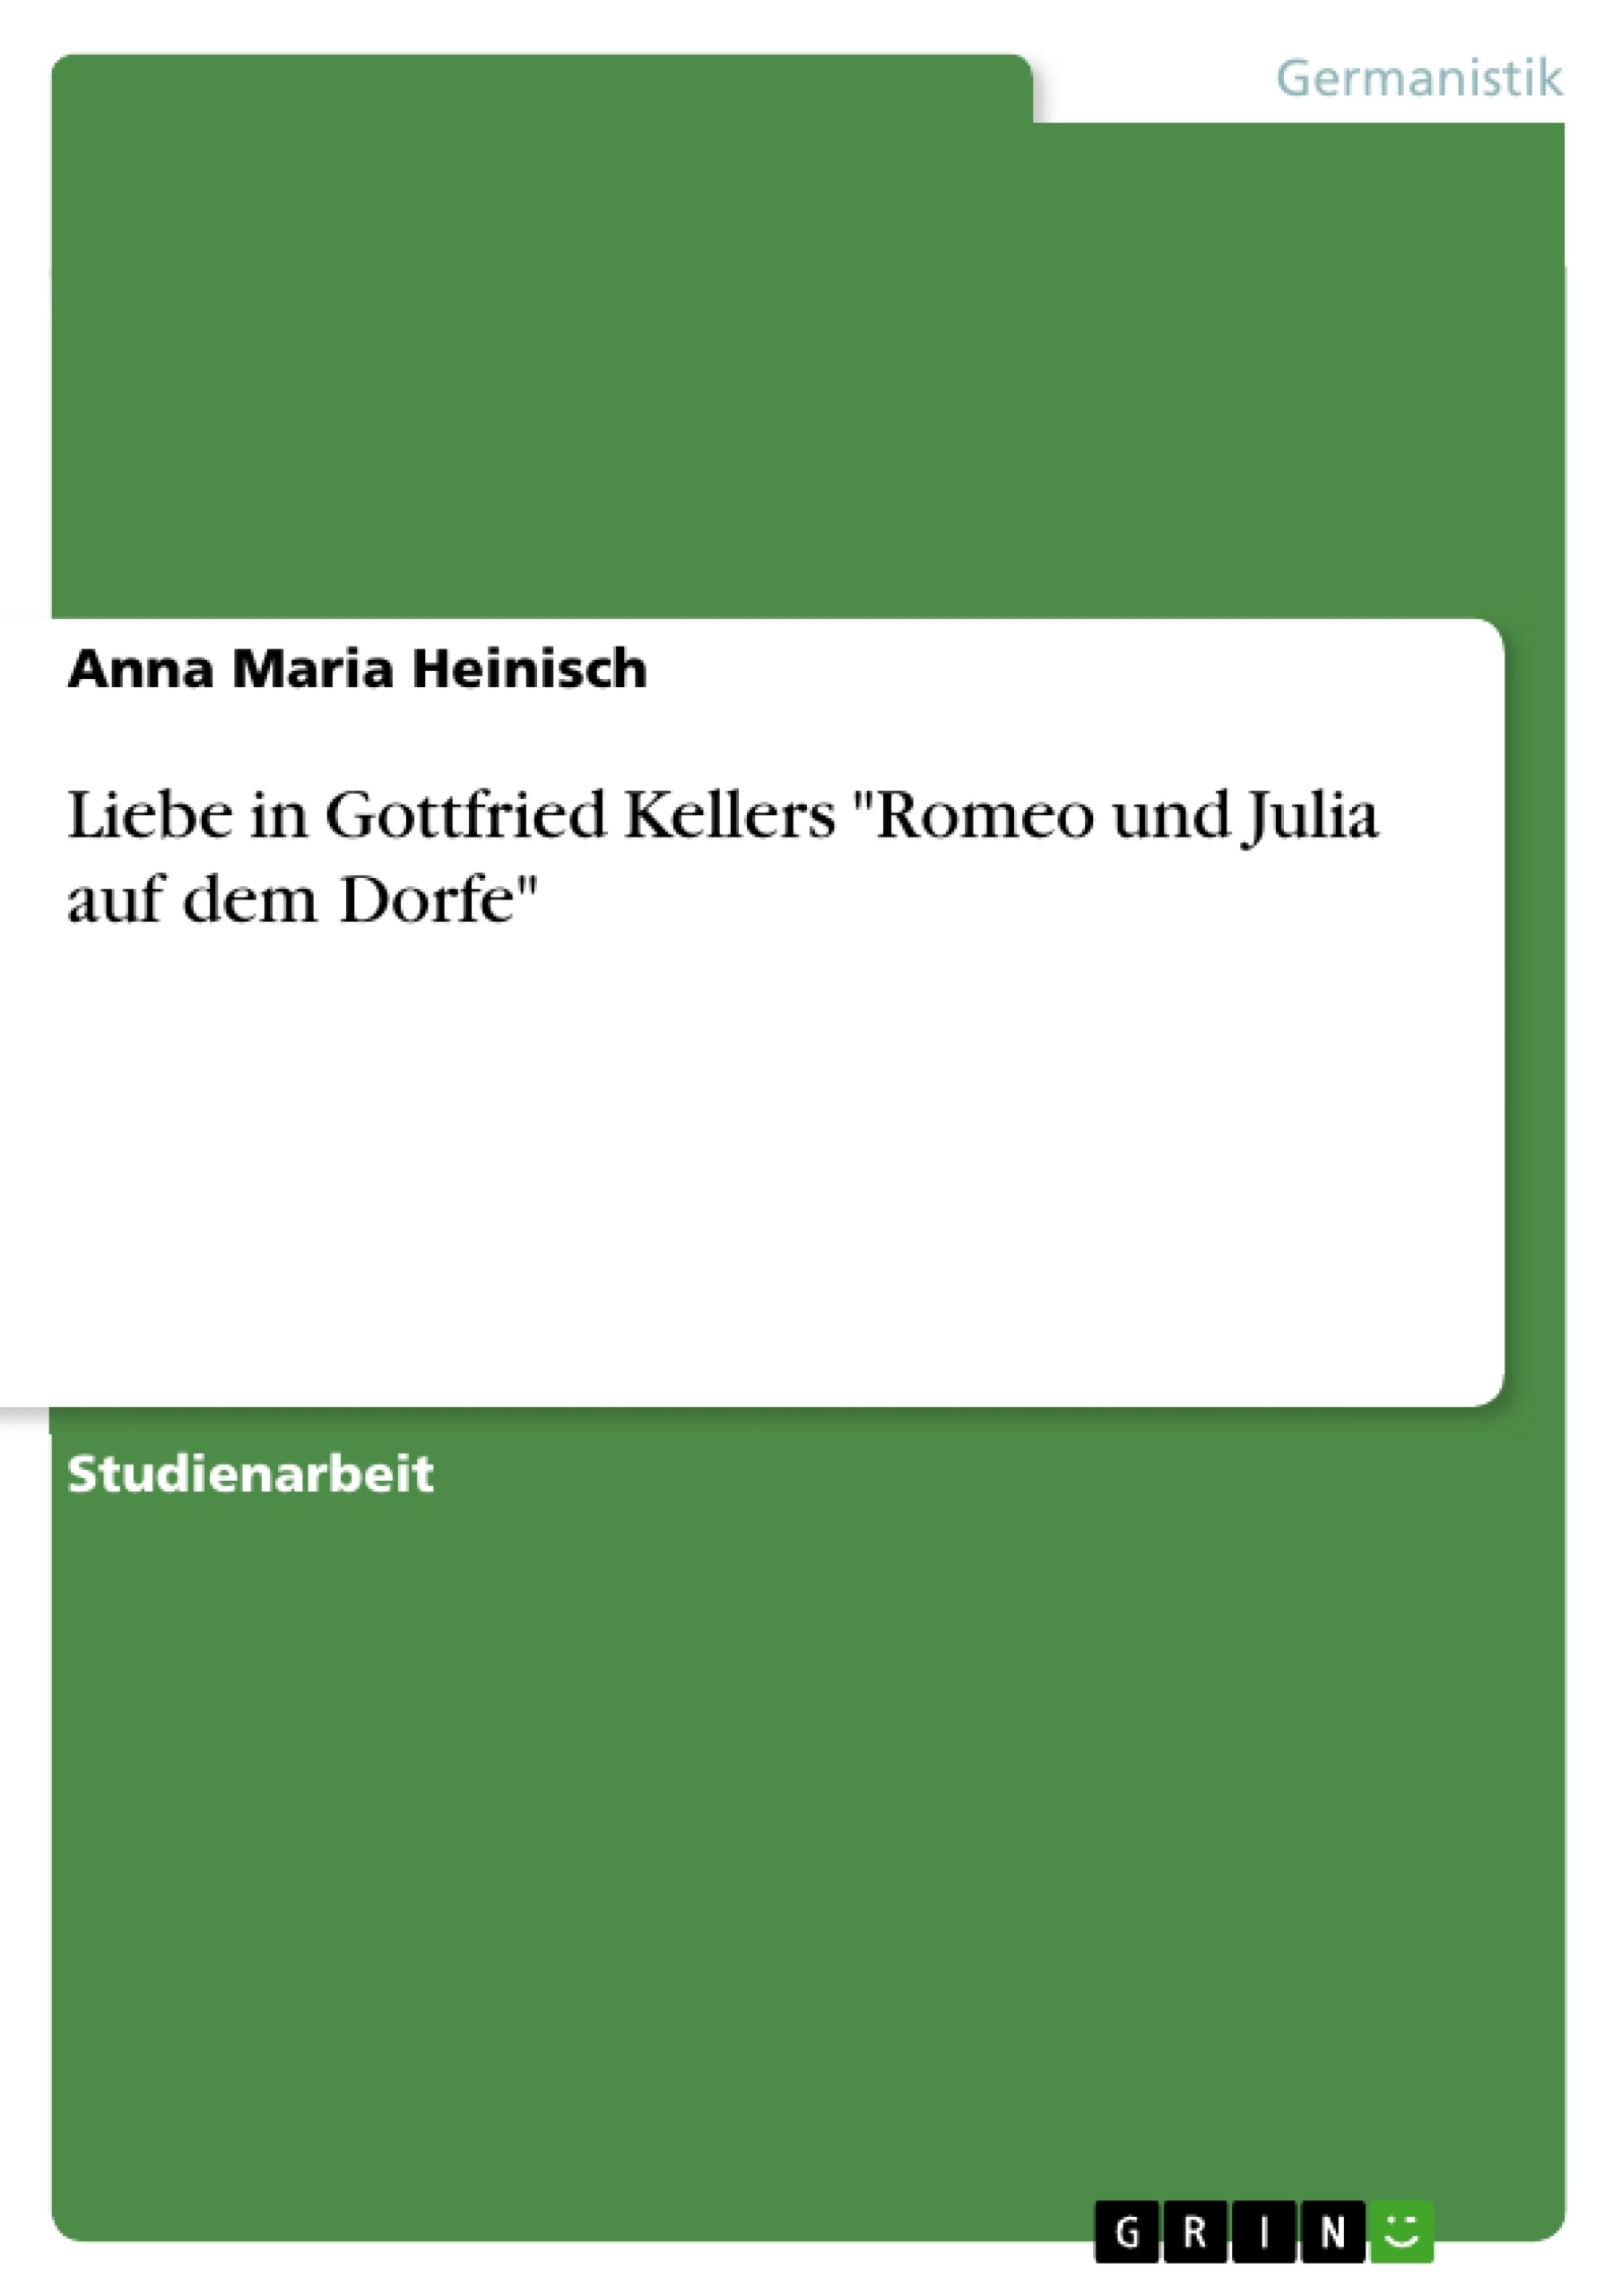 Titre: Liebe in Gottfried Kellers "Romeo und Julia auf dem Dorfe"